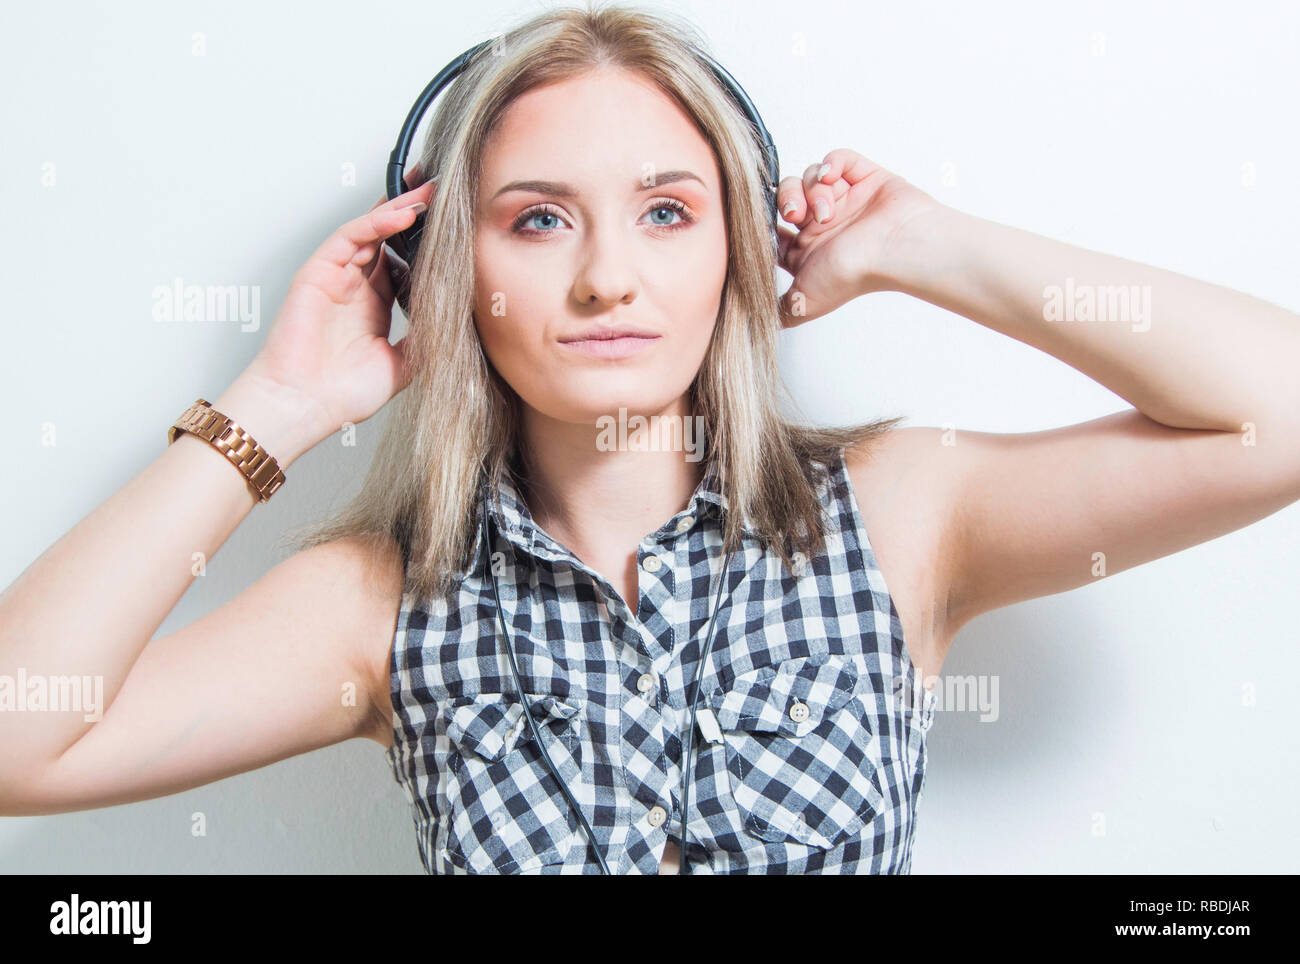 Schöne junge Mädchen in Plaid Shirt mit Kopfhörern und Smart Phone geniessen Sie zu Hause Musik, Kopf und Schultern Körper portrait. Weiße Wand, Jugend mu Stockfoto